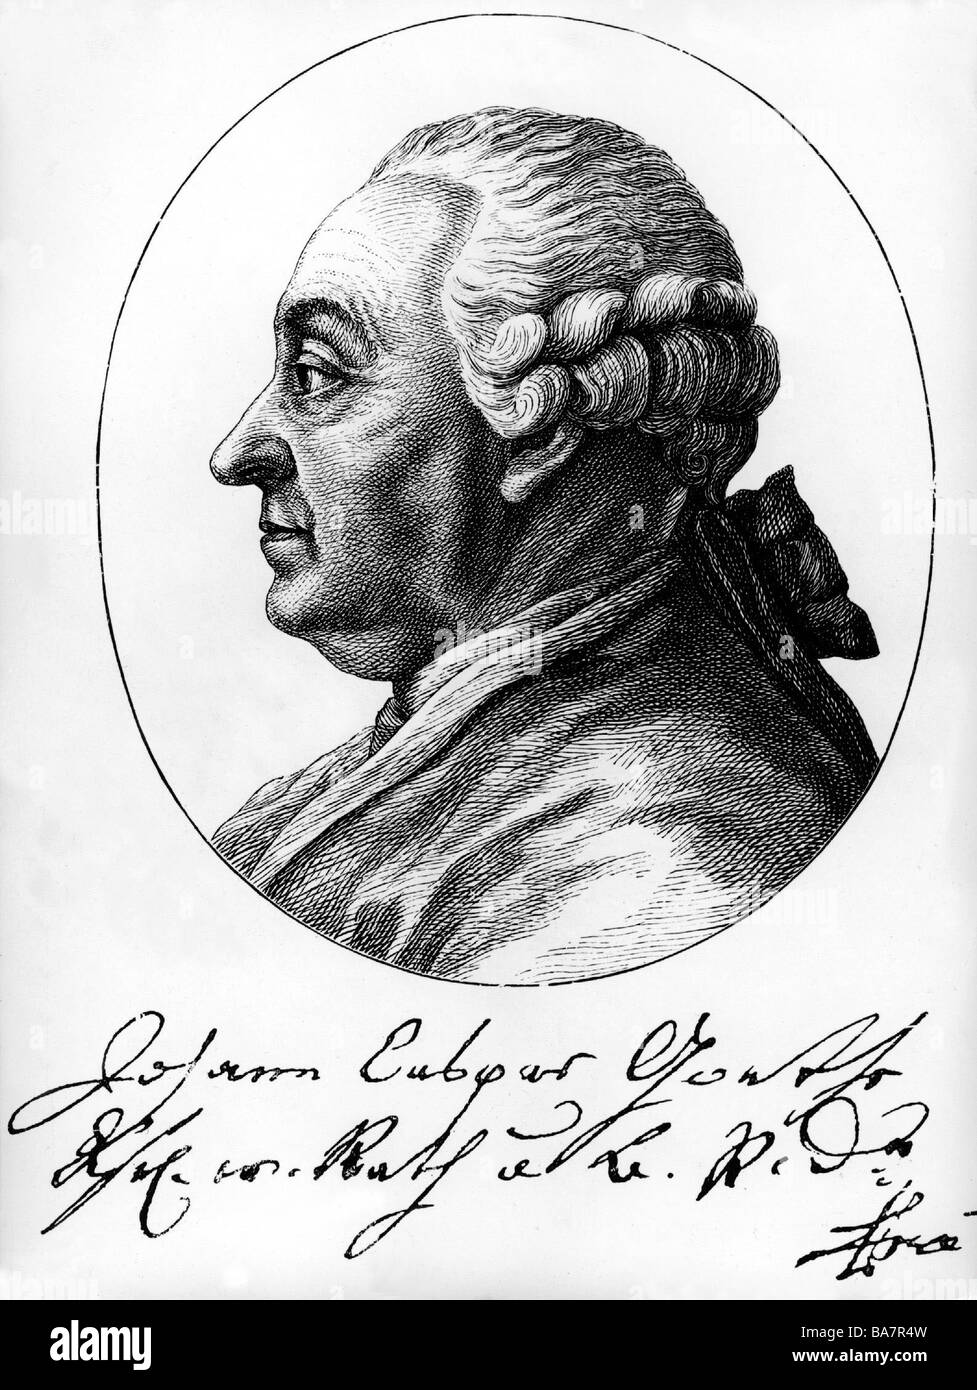 Goethe, Johann Kaspar, 29.7.1710 - 25.5.1782, deutscher Jurist, Porträt, Kupferstich, "Physiognomische Fragmente" von Johann Caspar Lavater, 1777, unter seine Unterschrift auf einen Empfang, 1776, Artist's Urheberrecht nicht gelöscht werden Stockfoto